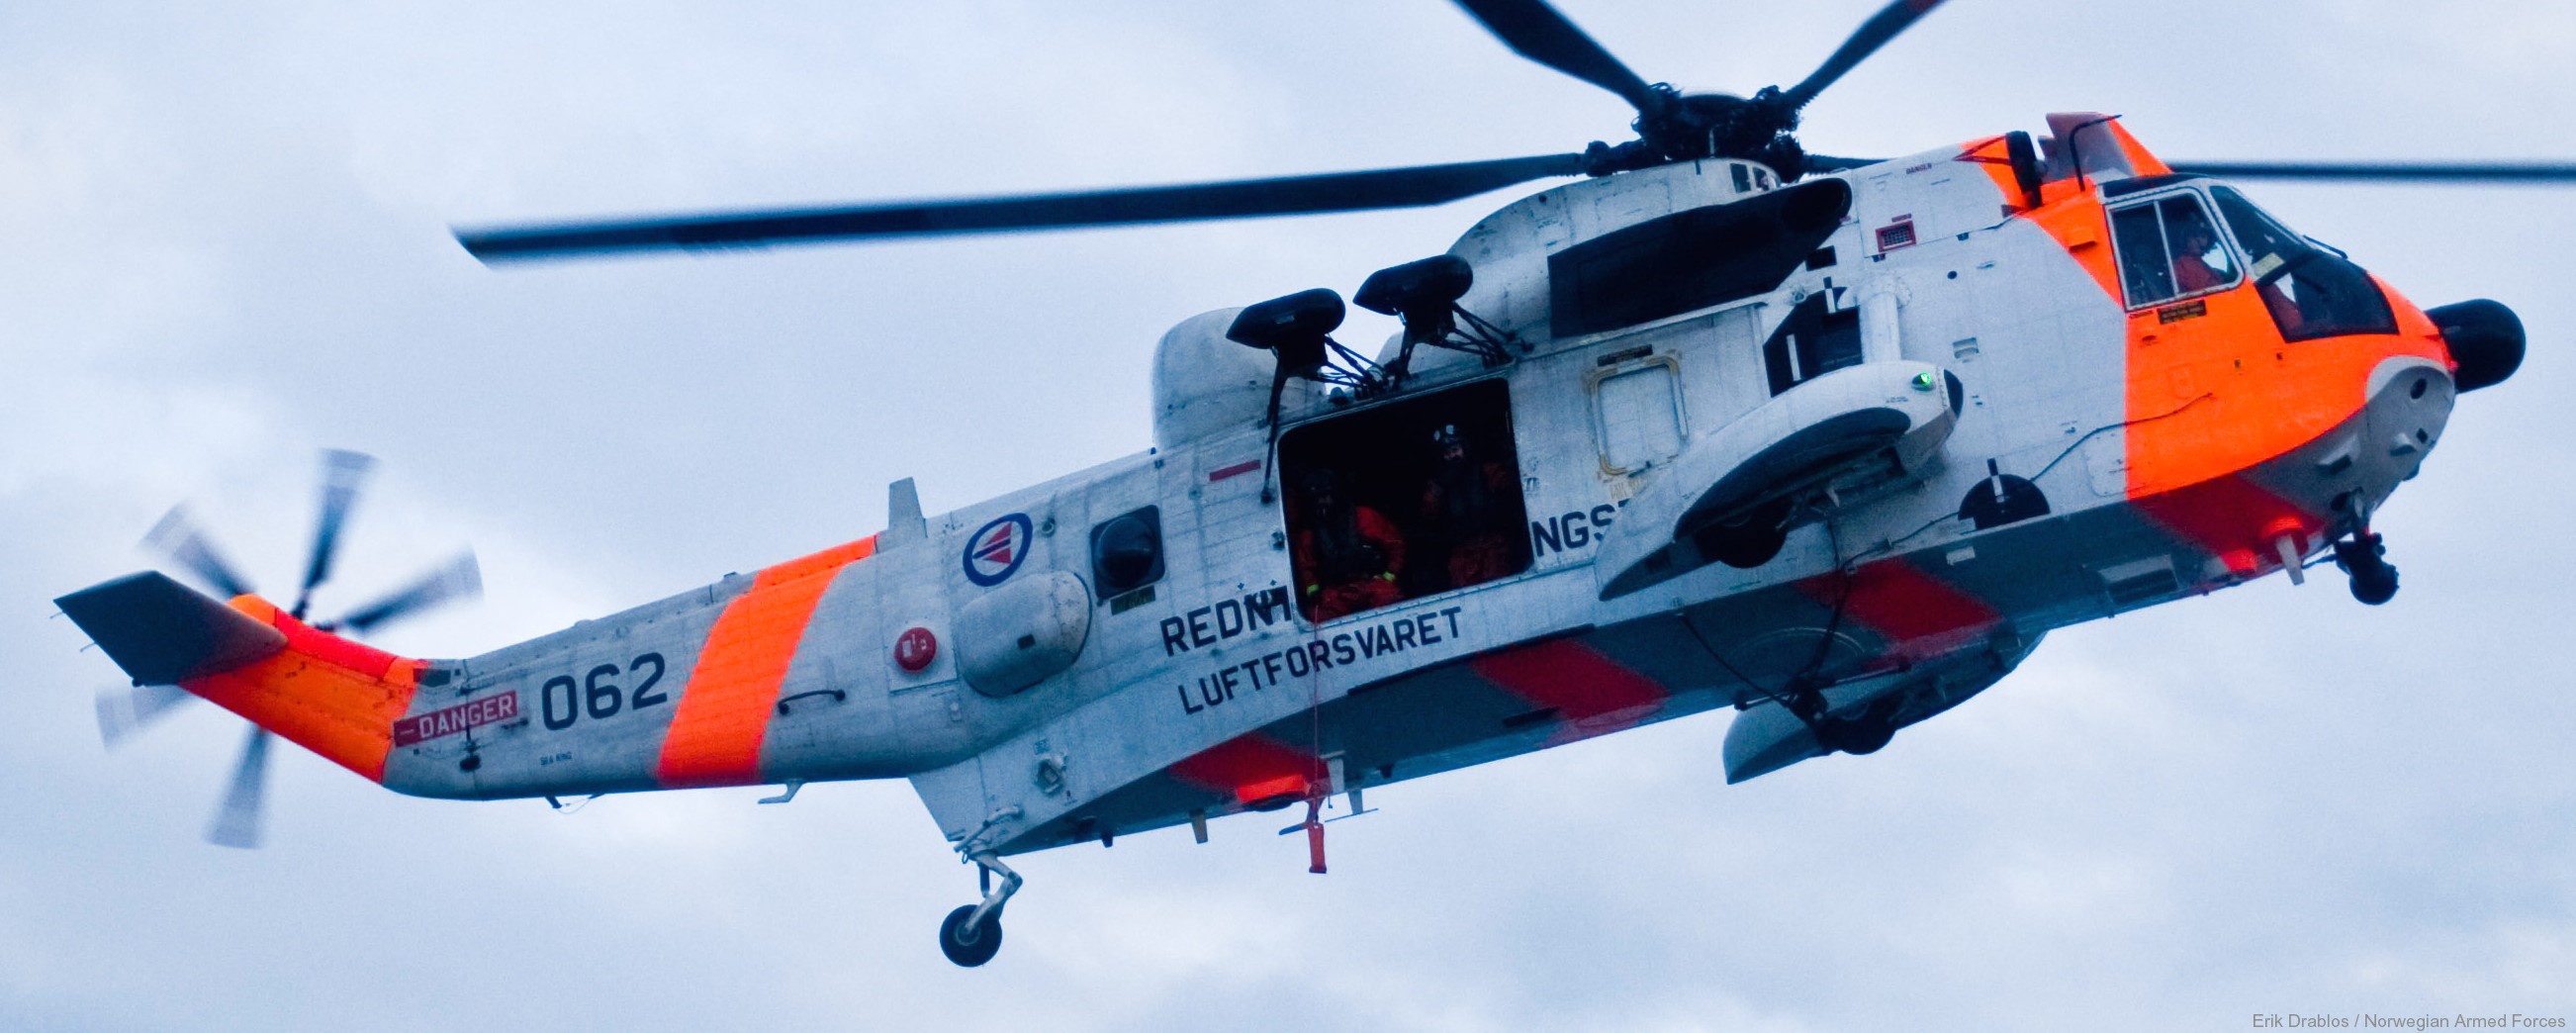 westland ws-61 sea king royal norwegian air force sar rescue 330 squadron skvadron luftforsvaret 062 12